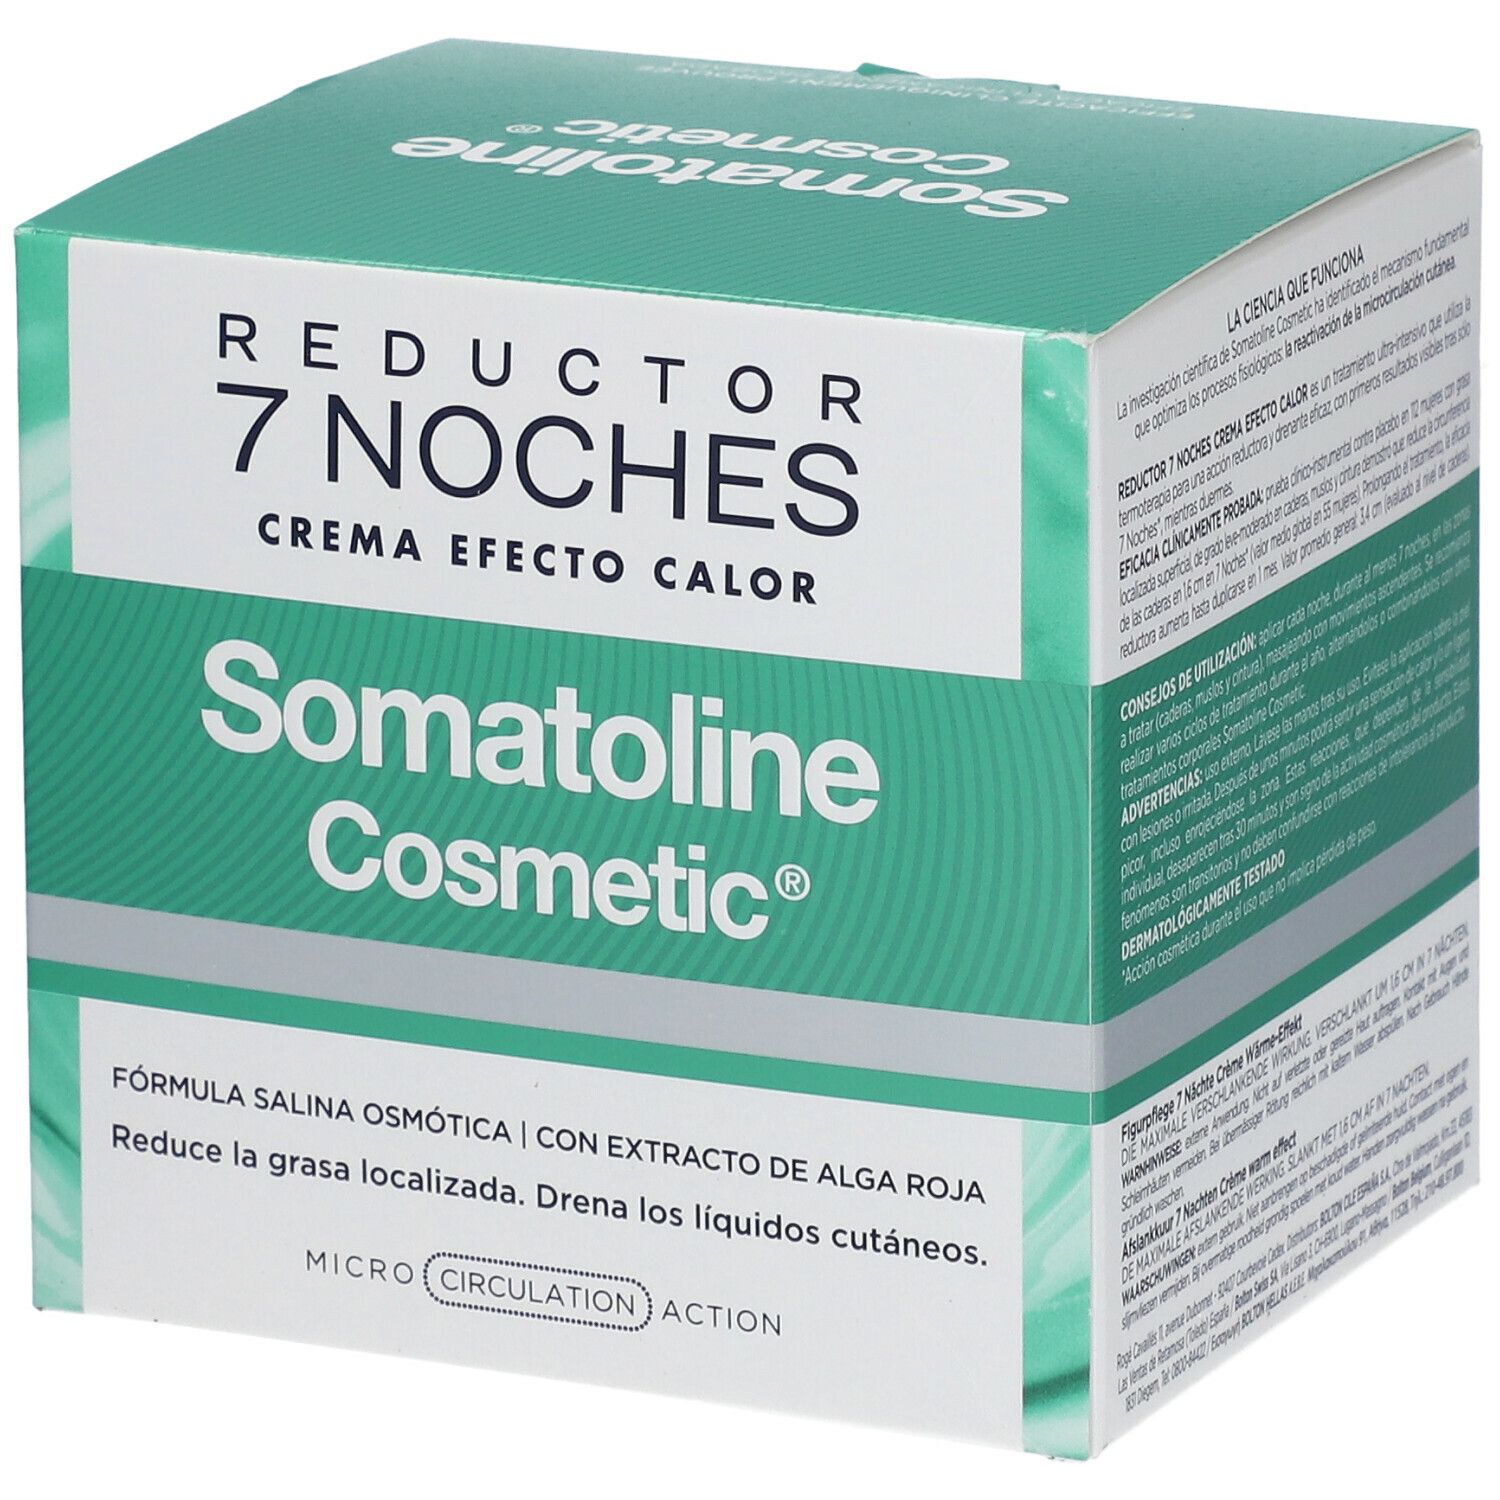 Somatoline Cosmetic® Amincissant Intensif Crème de Nuit 7 Nuits